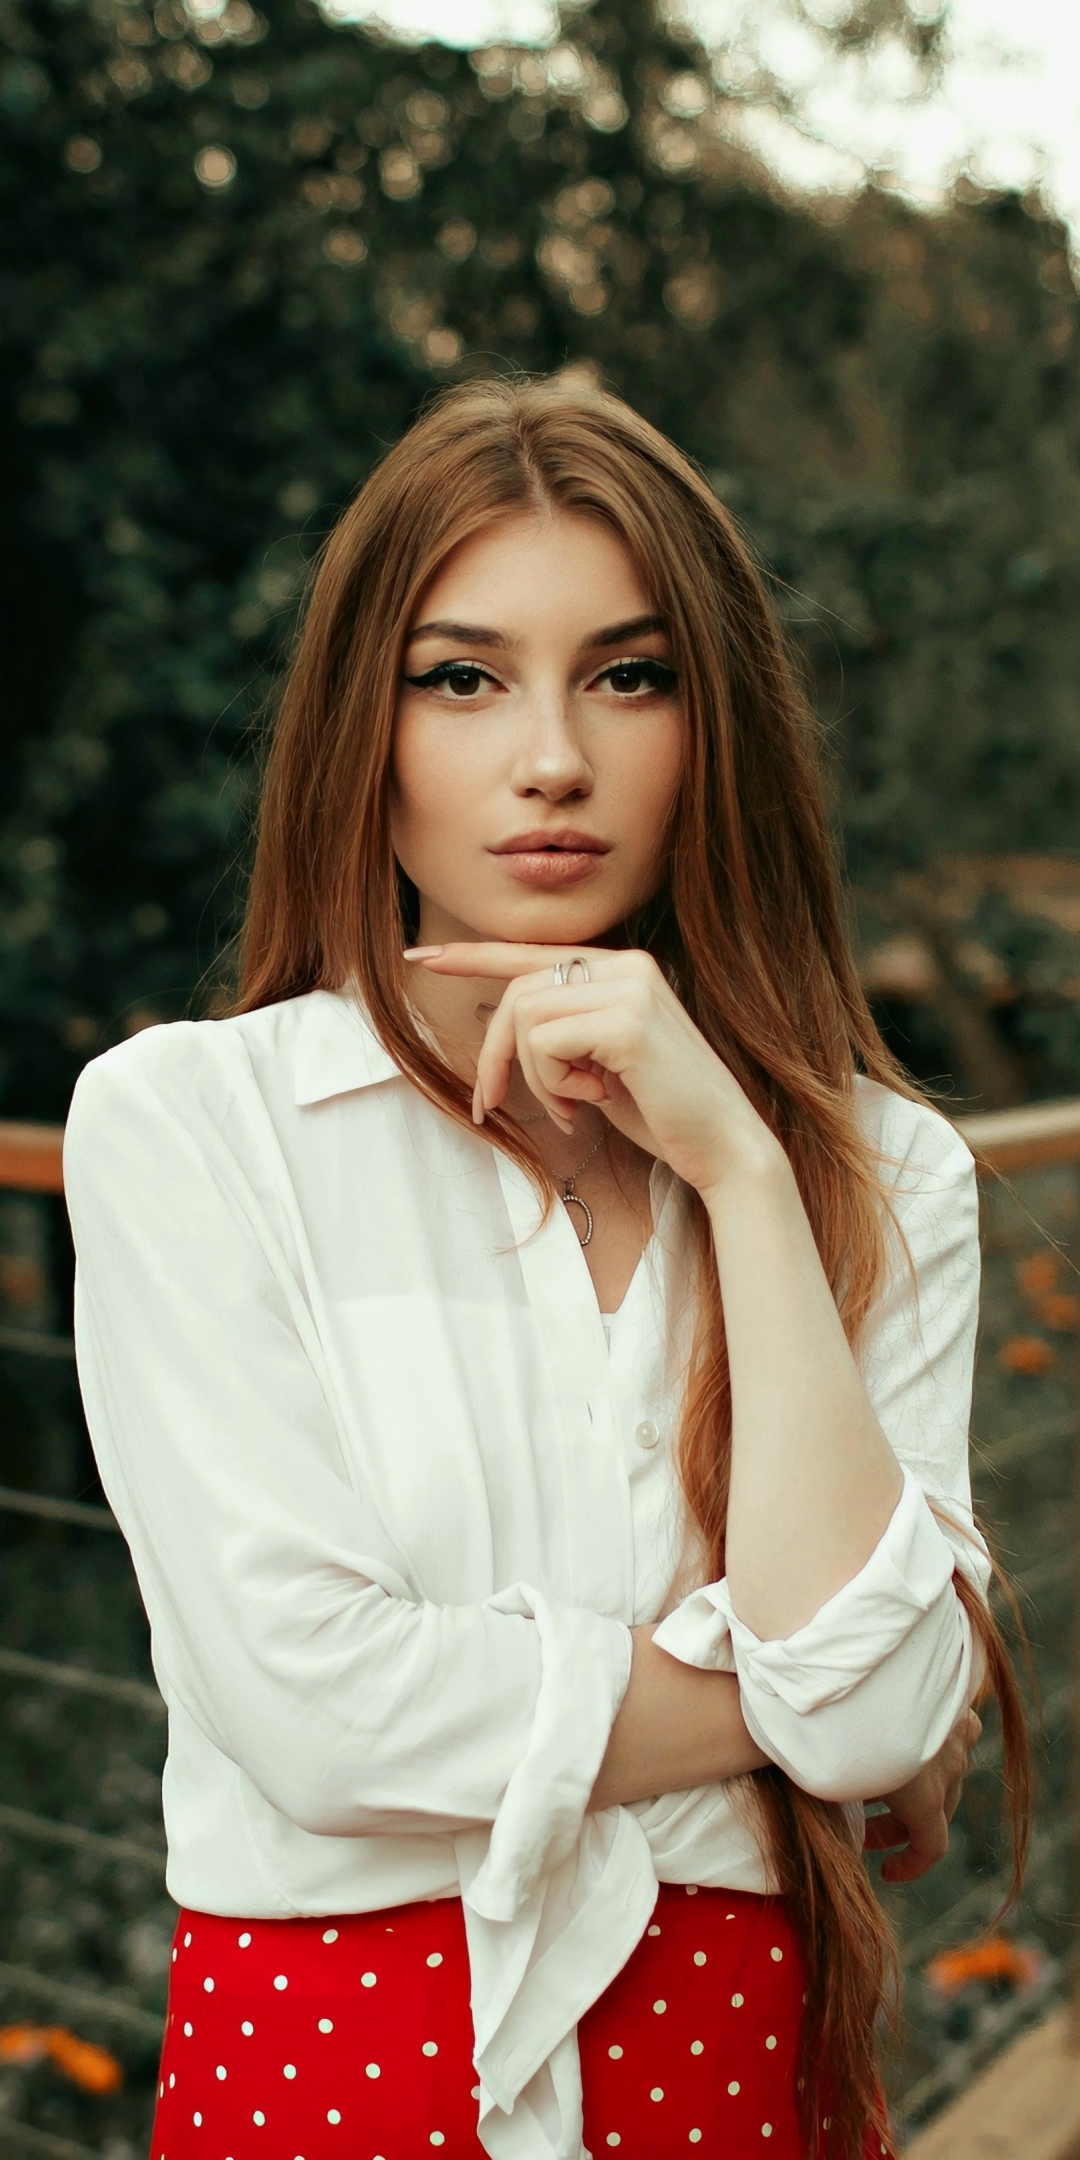 Blonde, white shirt, girl model, outdoor, 1080x2160 wallpaper